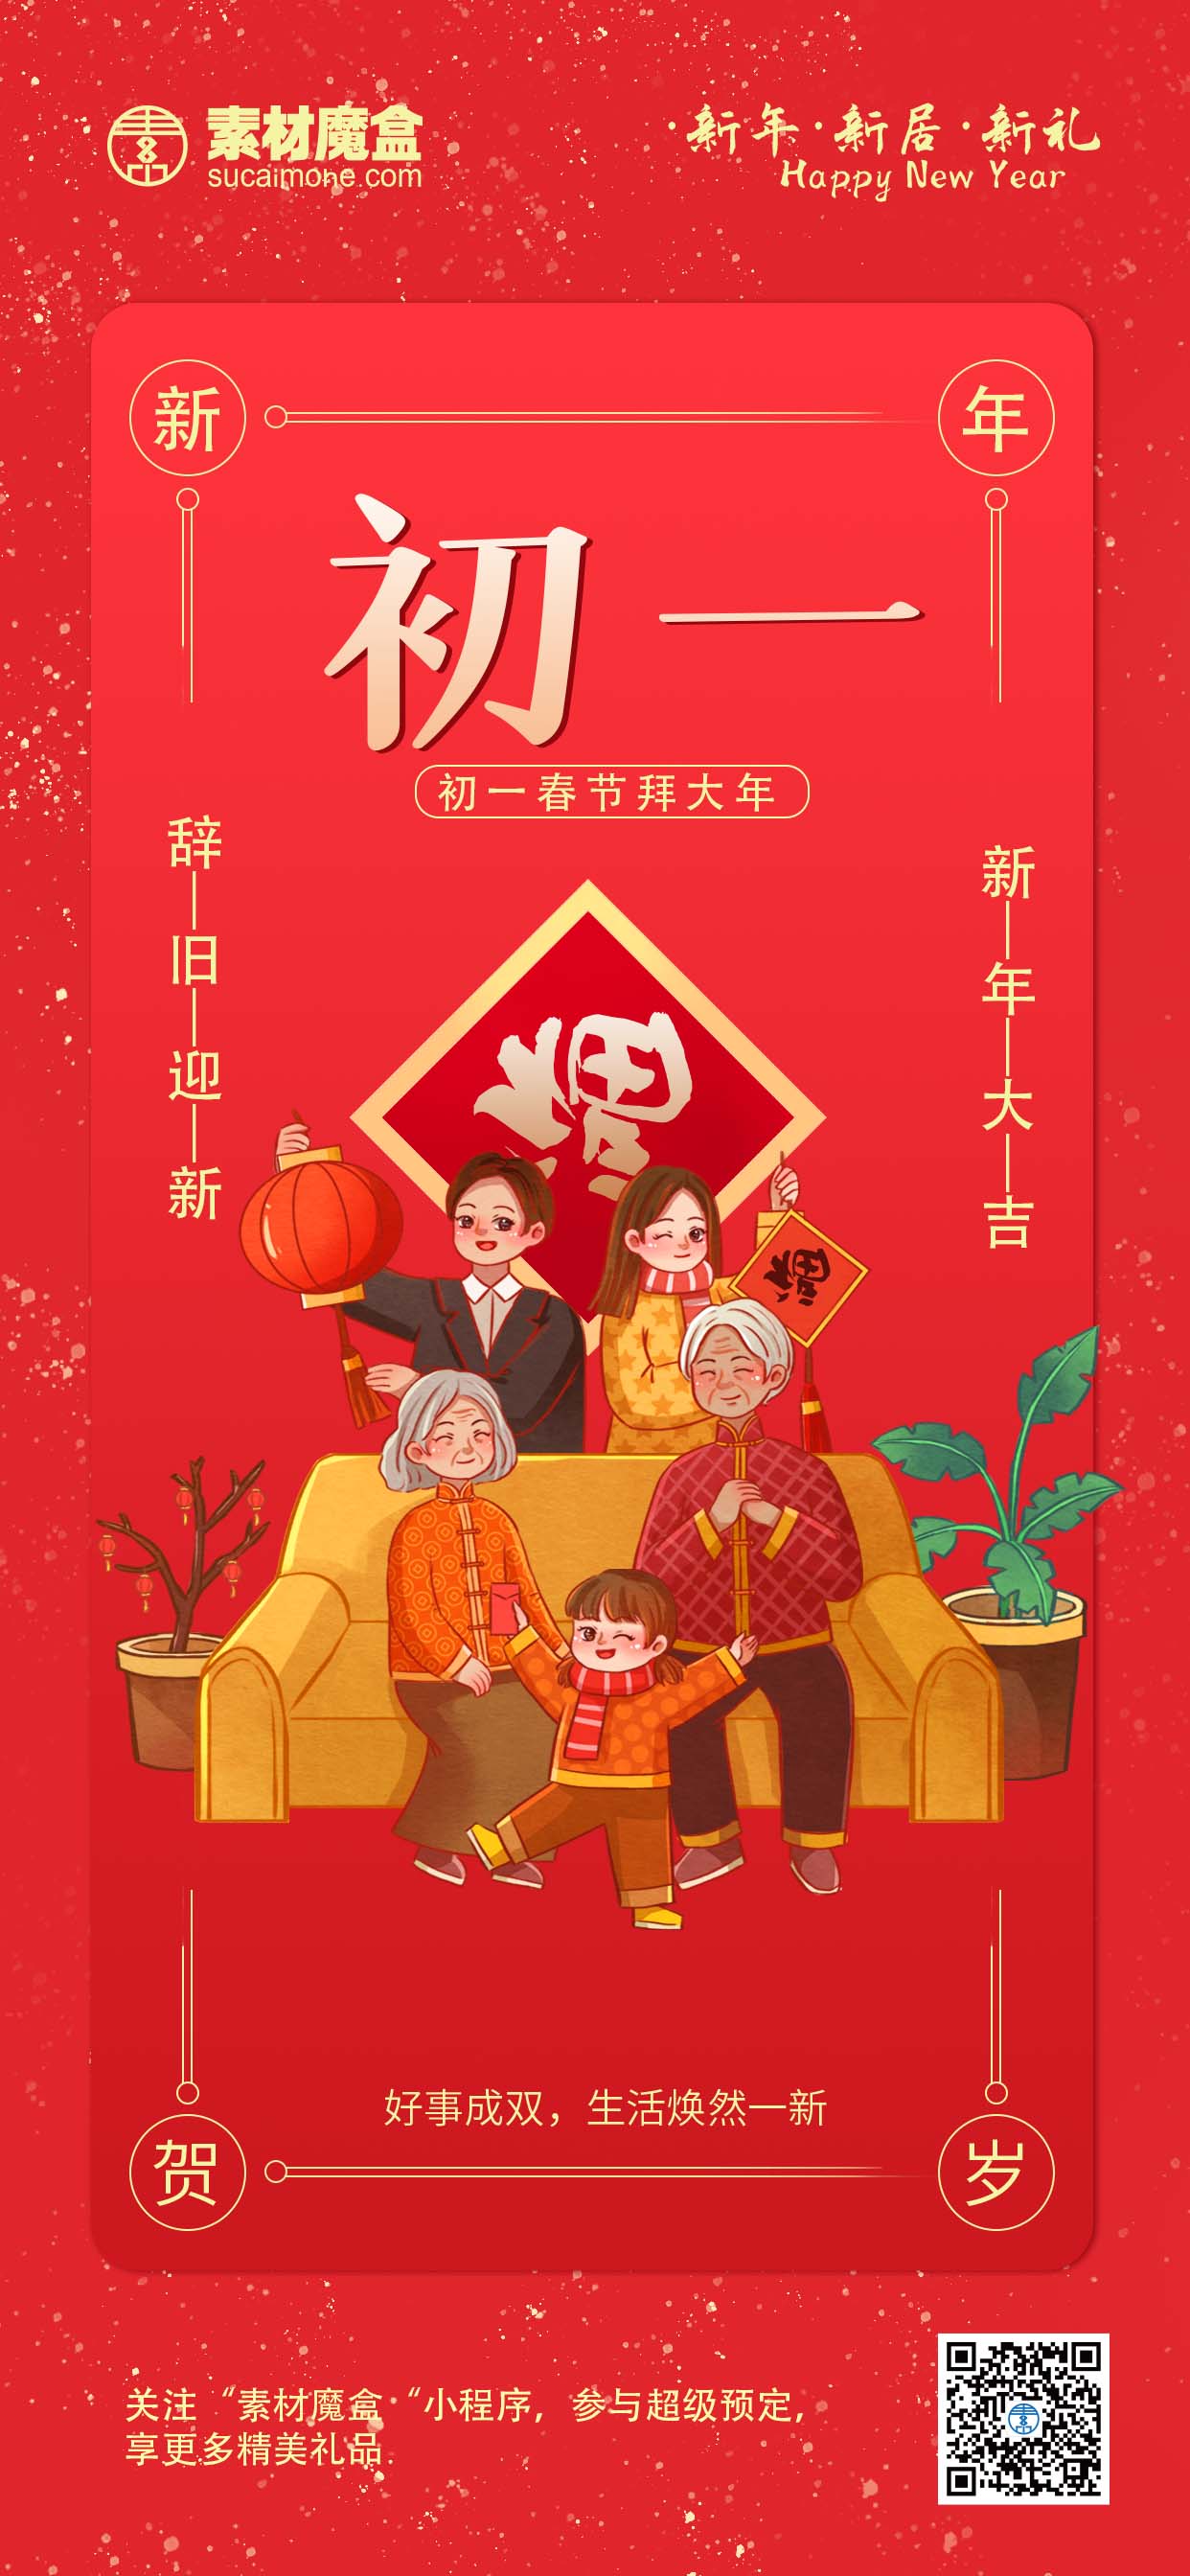 春节初一借势宣传海报 